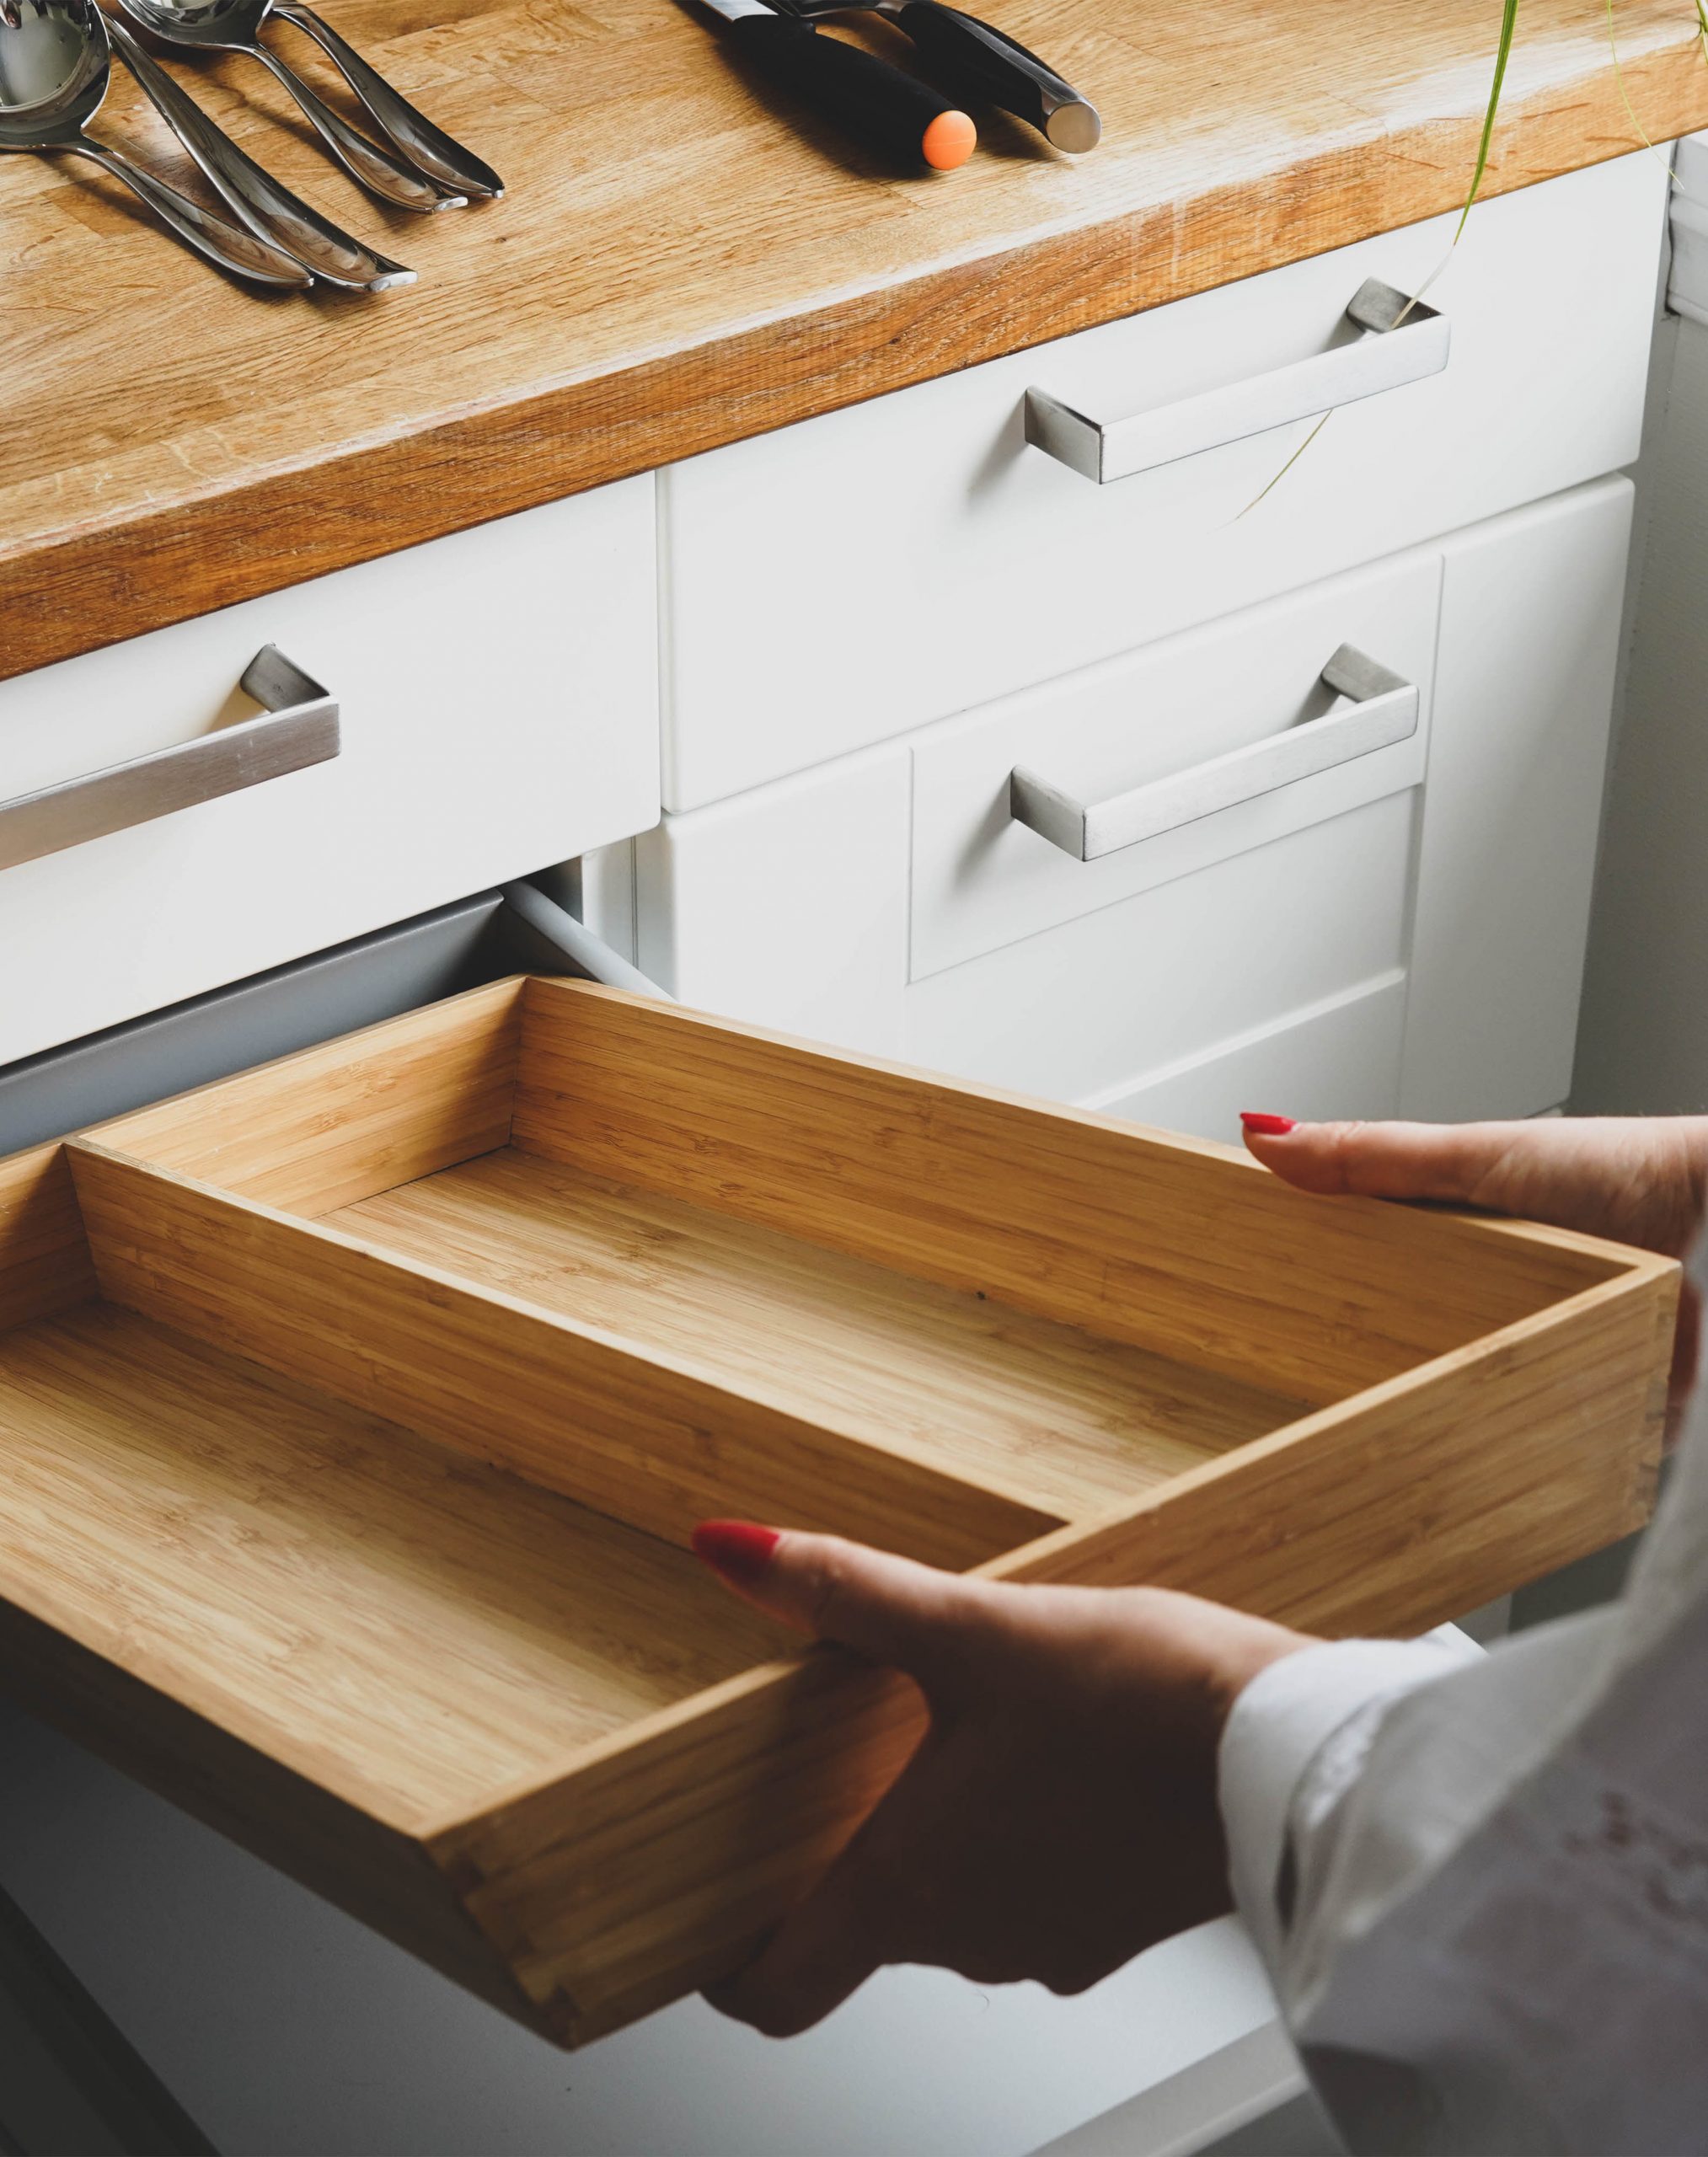 Organize cutlery drawer kitchen